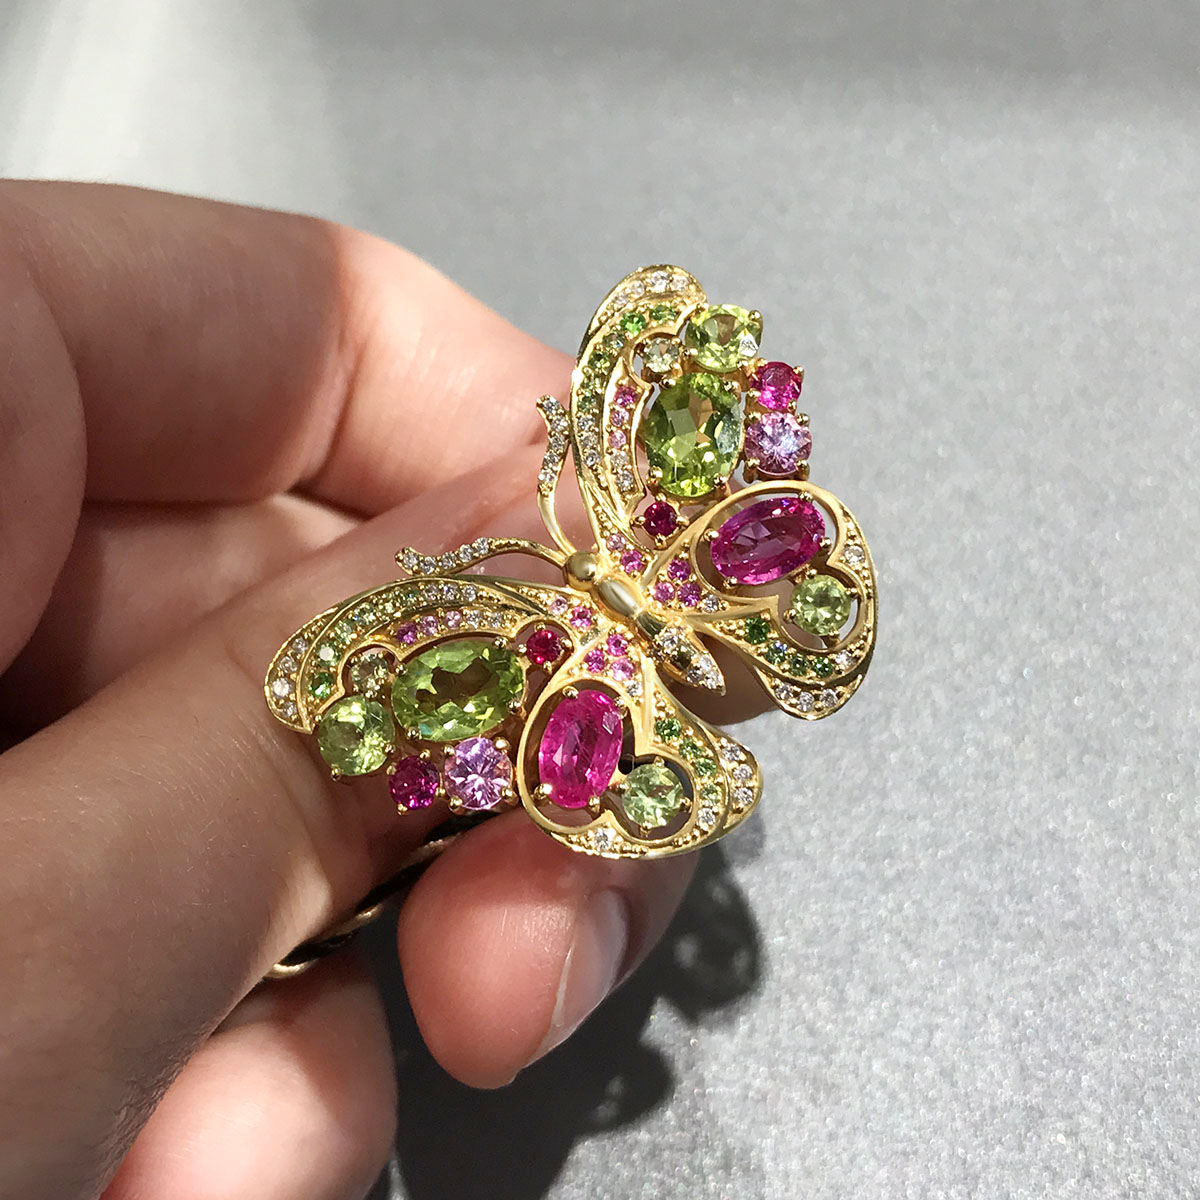 Кольцо Бабочка с цветными камнями и бриллиантами в желтом золоте 750 пробы, фото № 3